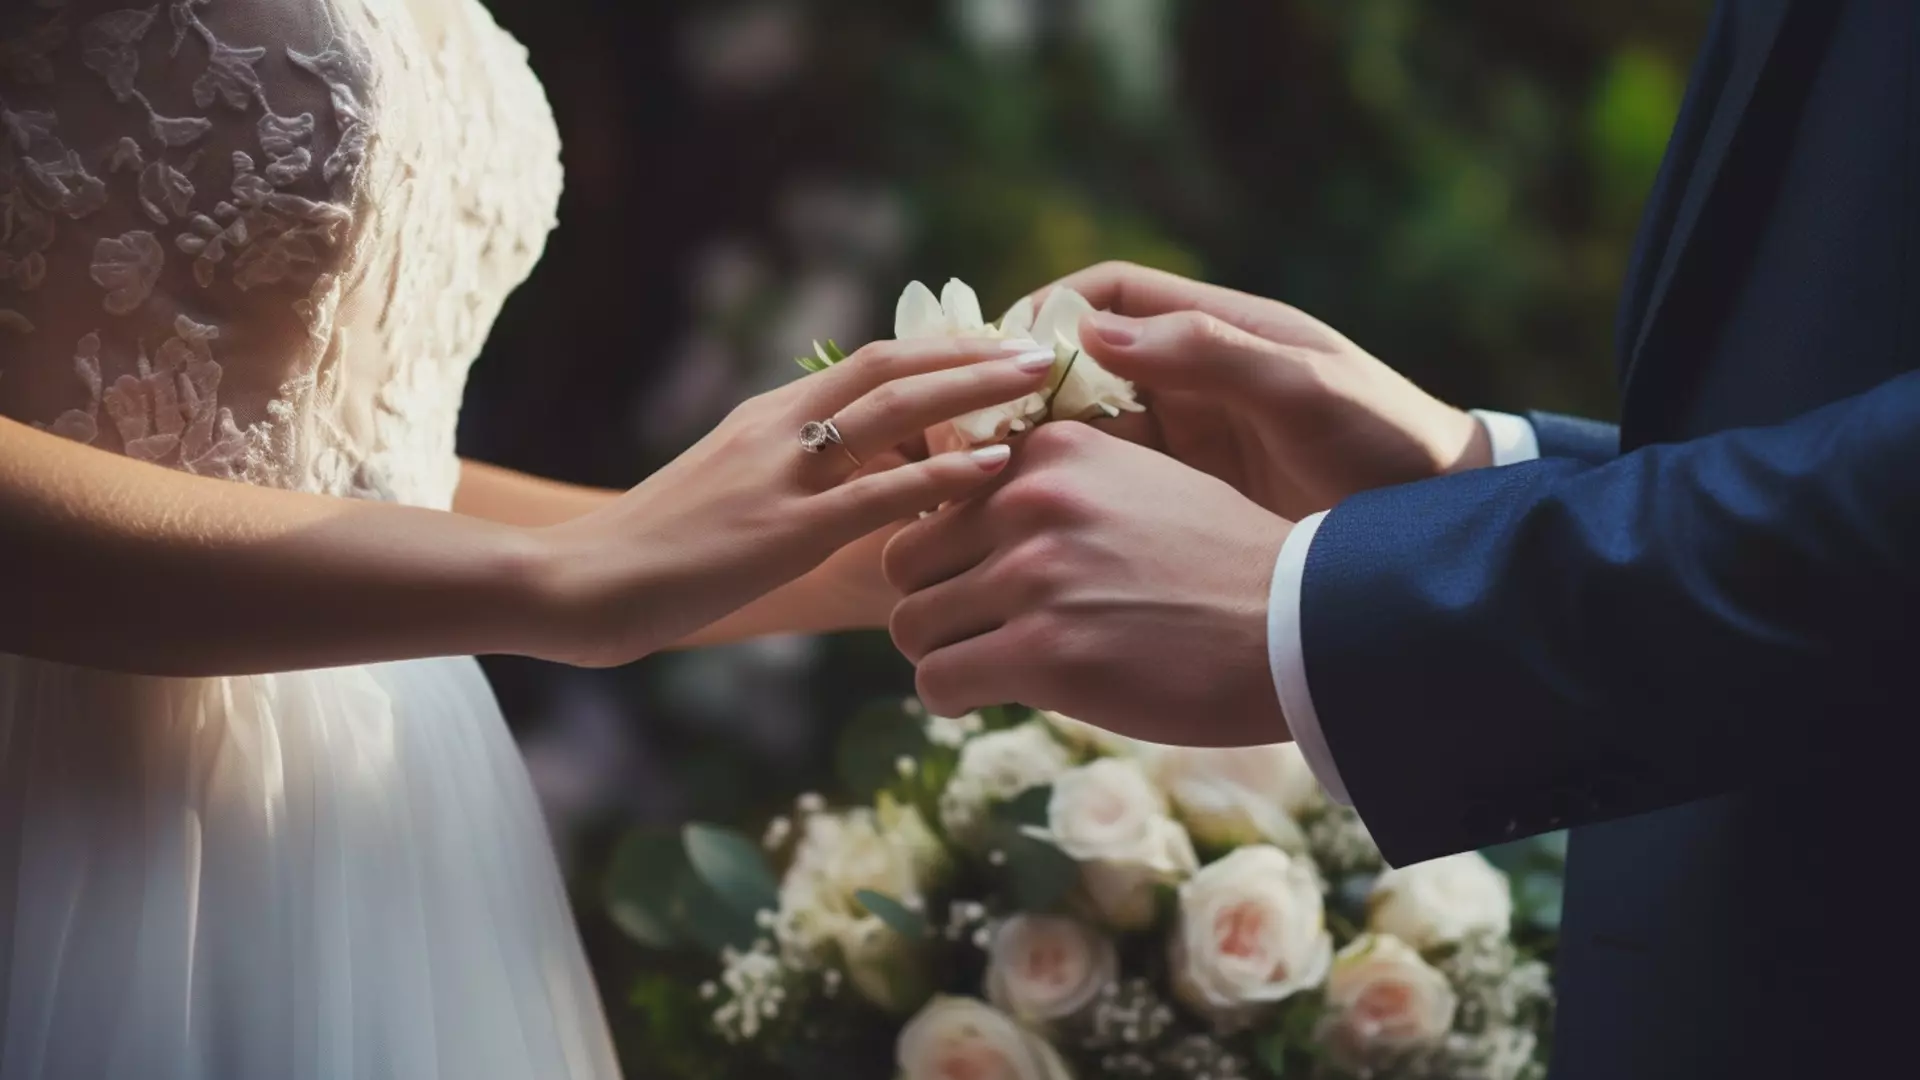 В Башкирии зафиксировано снижение количества регистрируемых браков и разводов